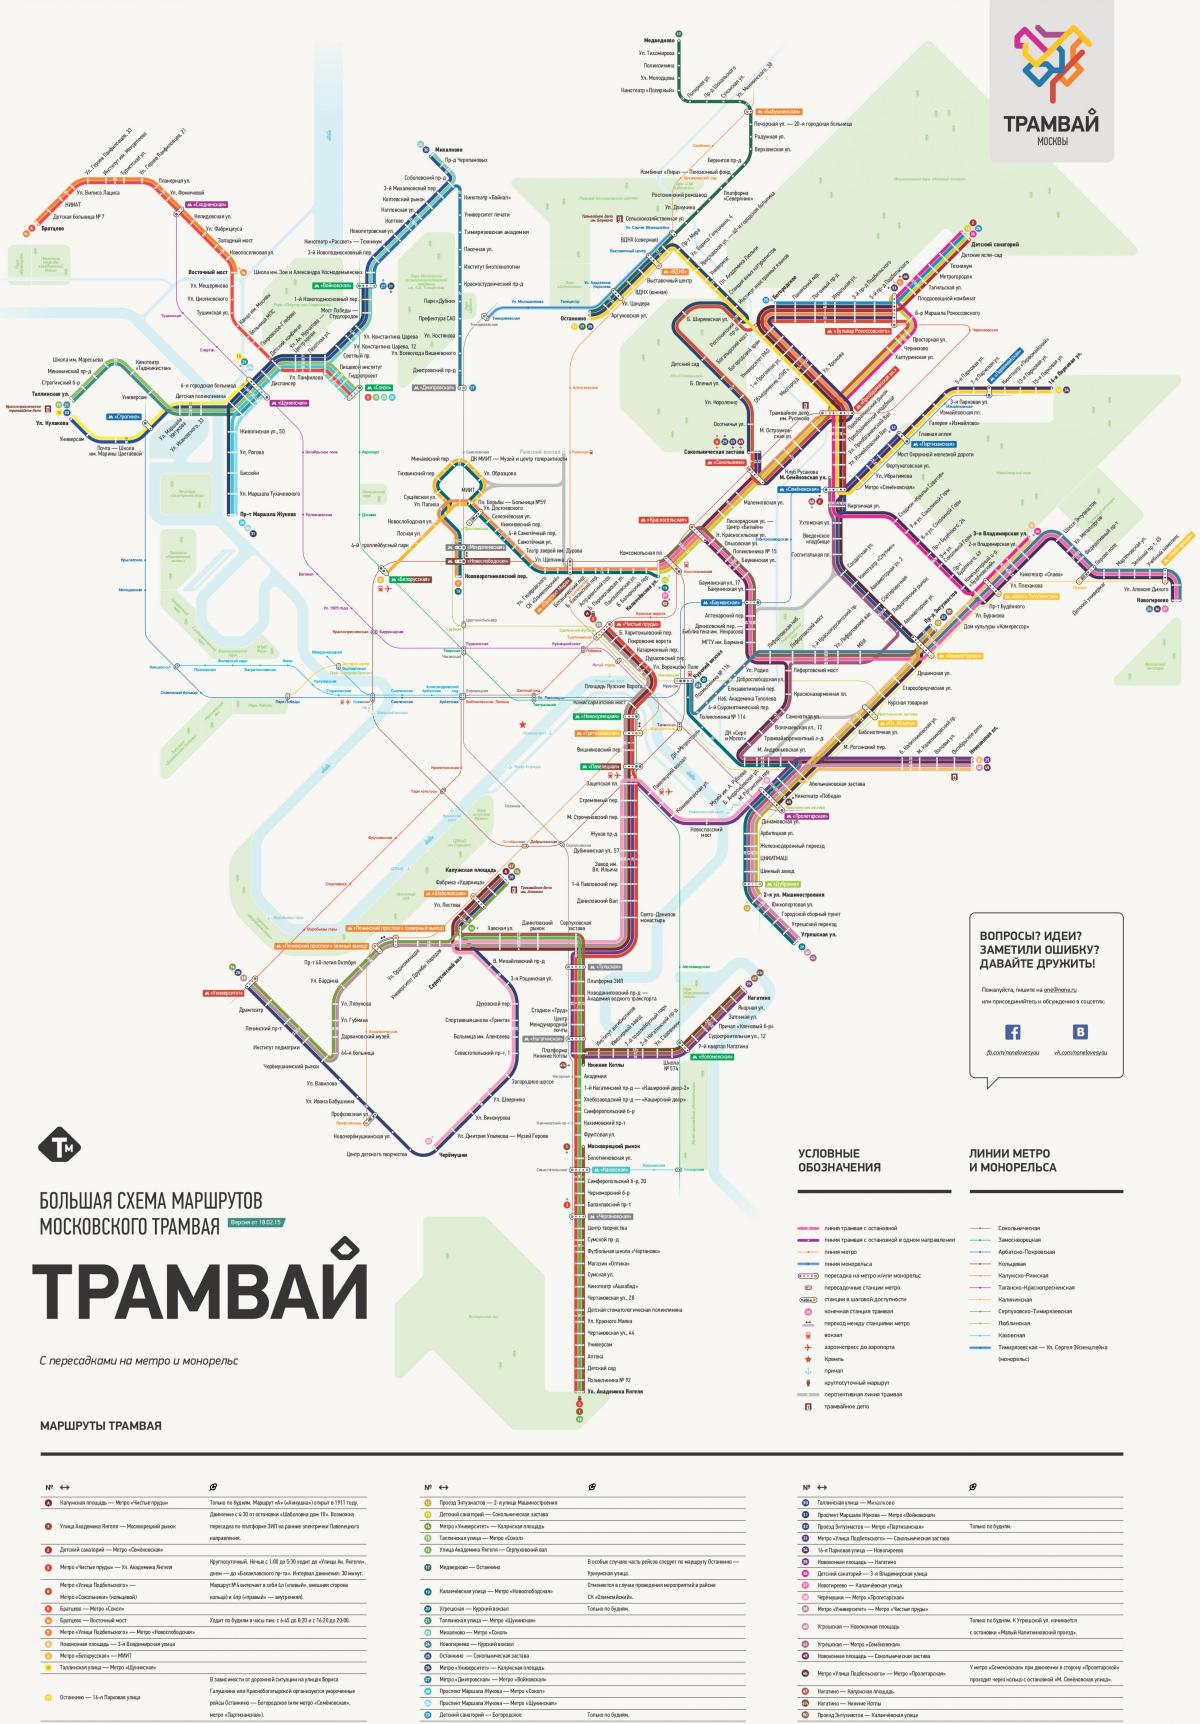 خريطة موسكو الترام